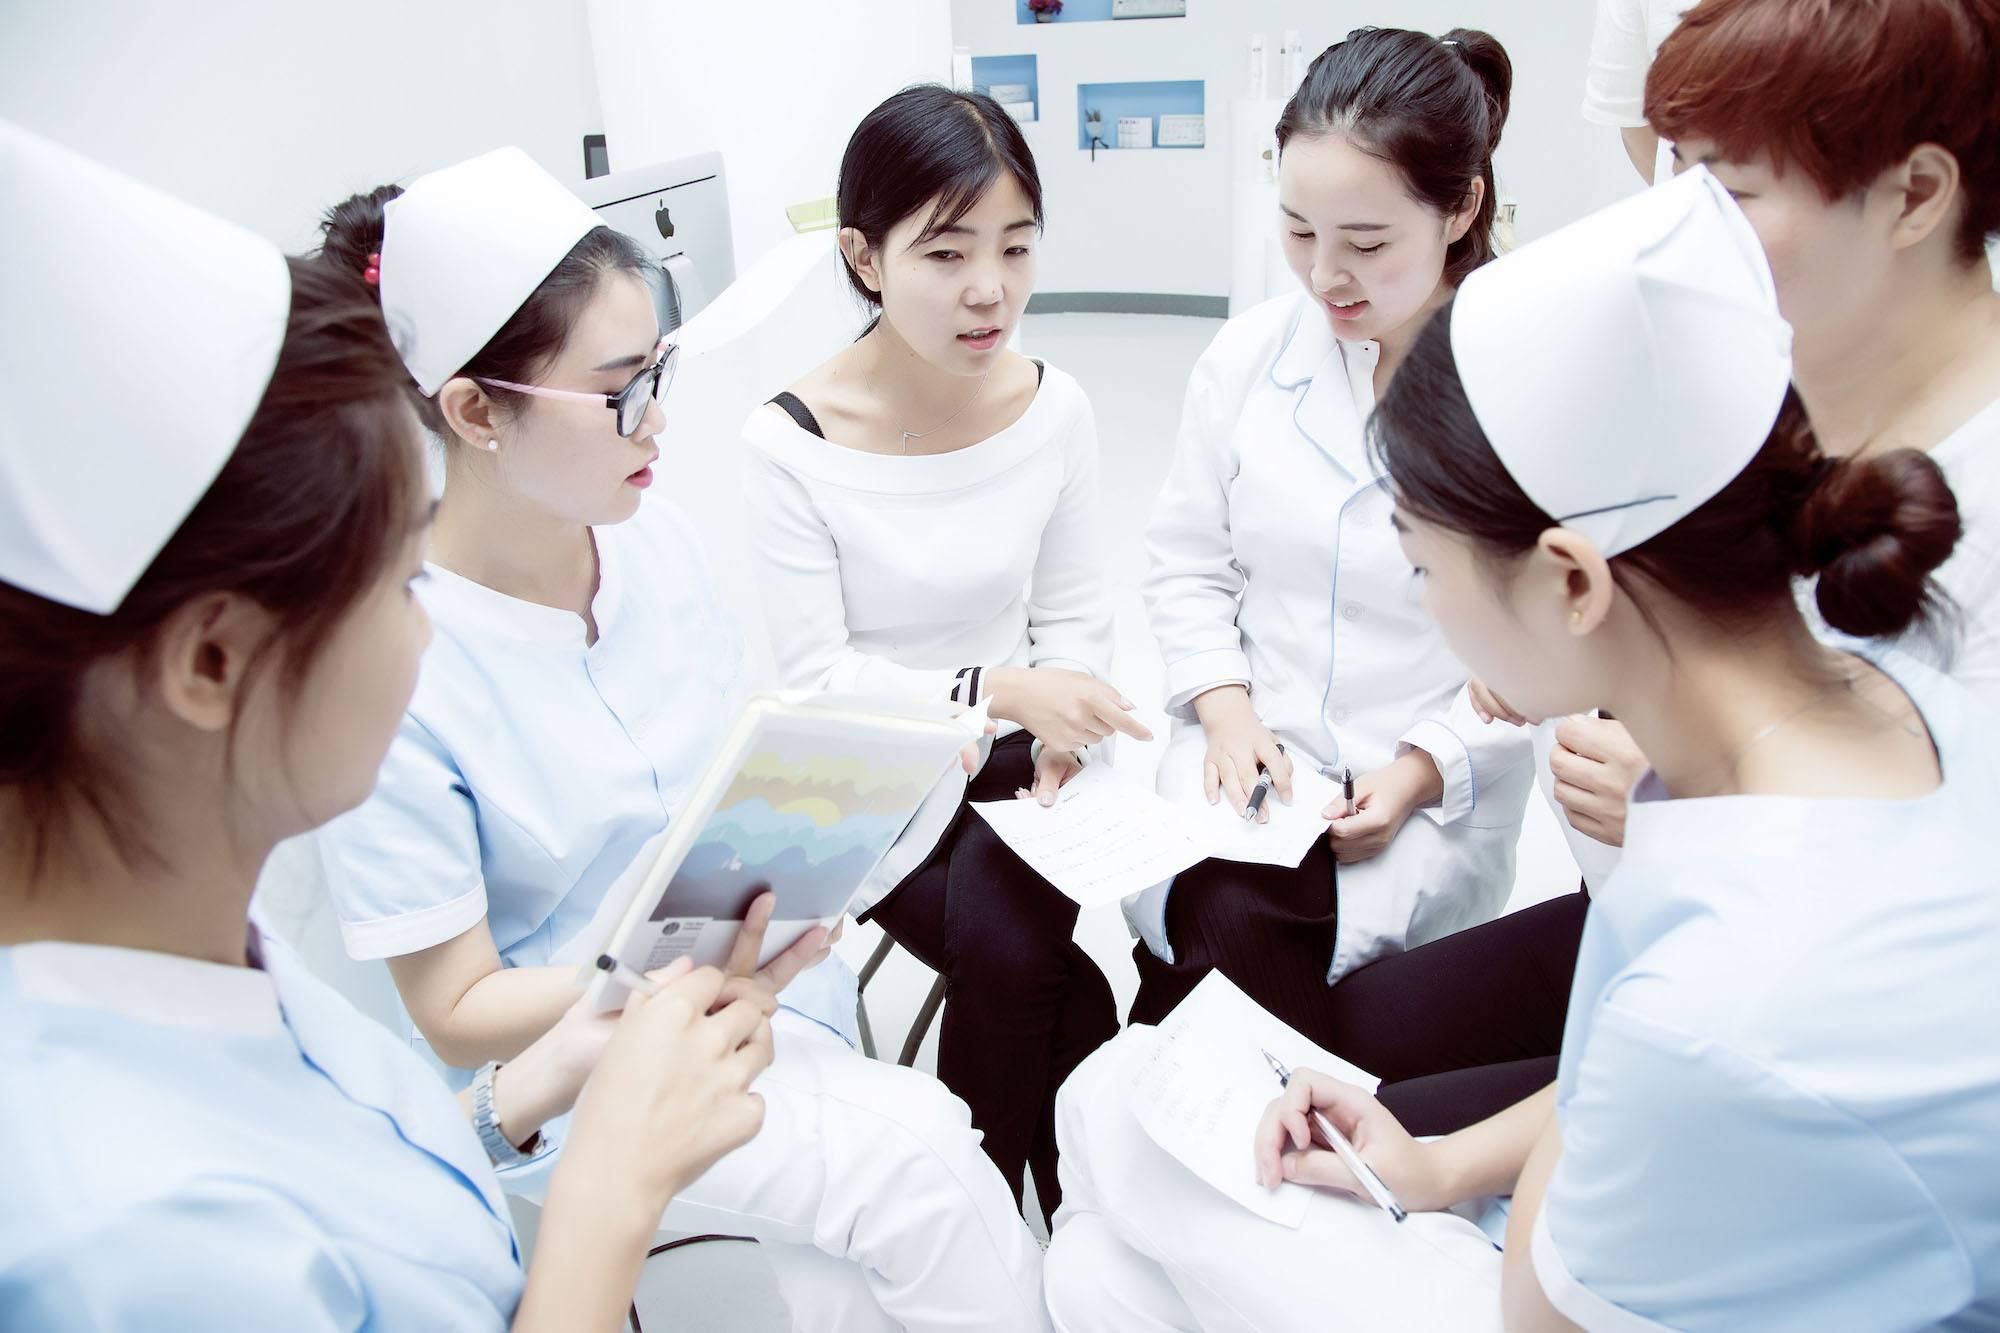 在深圳怎样找专业的美容培训学校?在美容学校能学到好的美容技术吗? 